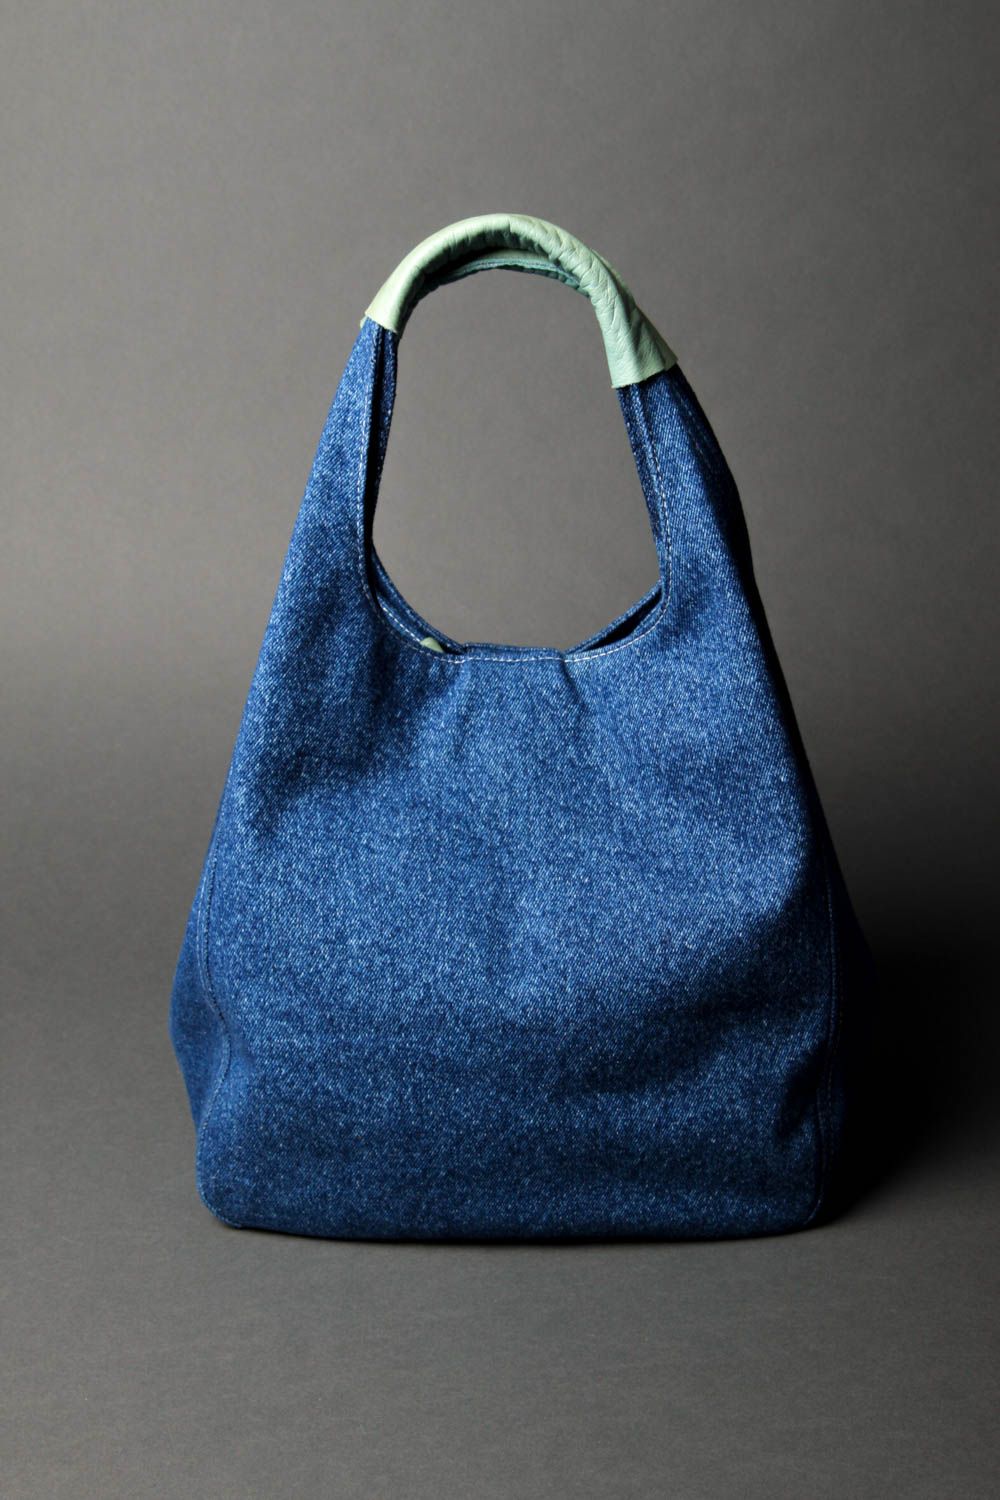 Сумка ручной работы женская сумка авторская тканевая сумка из джинсовой ткани фото 3